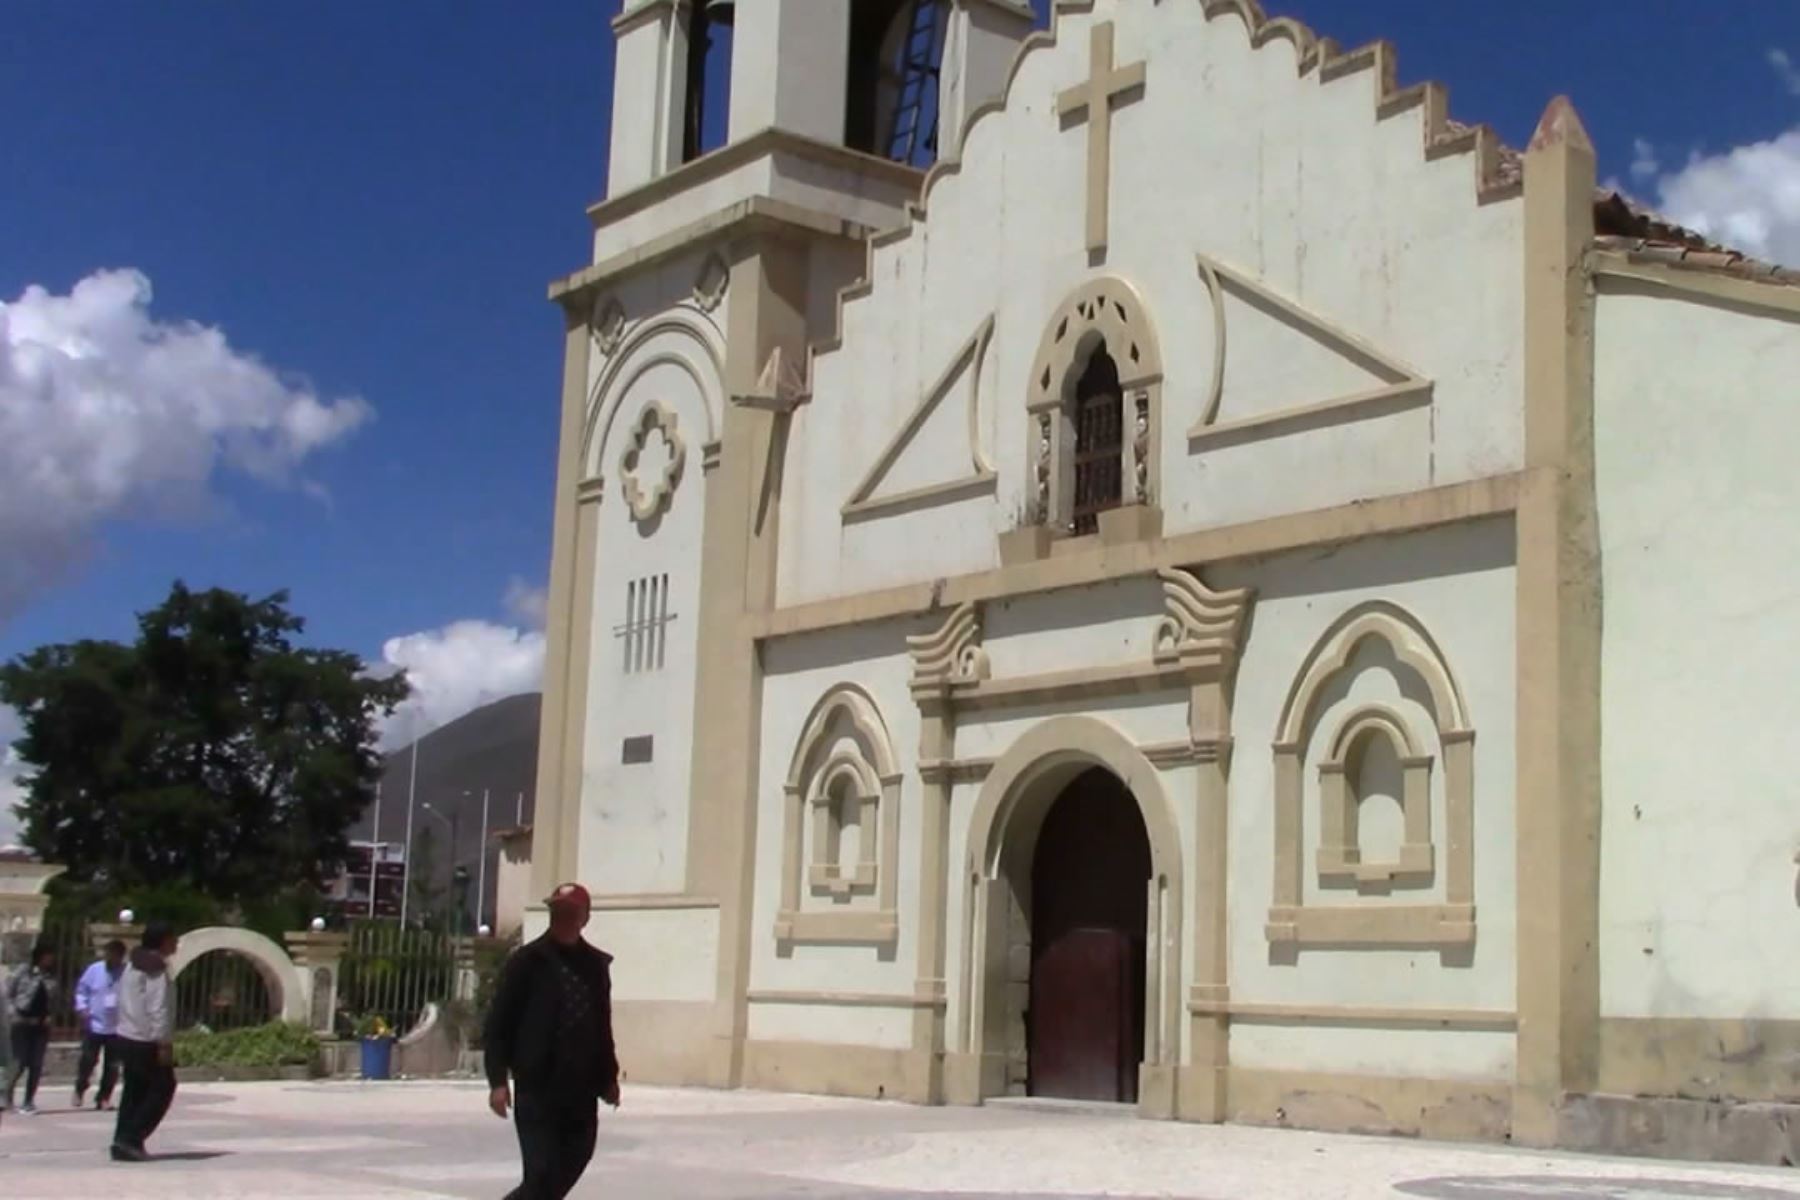 Reportan robo sacrílego en iglesia de distrito de Chongos Bajo, ubicado en la provincia de Chupaca, región Junín. ANDINA/Pedro Tinoco